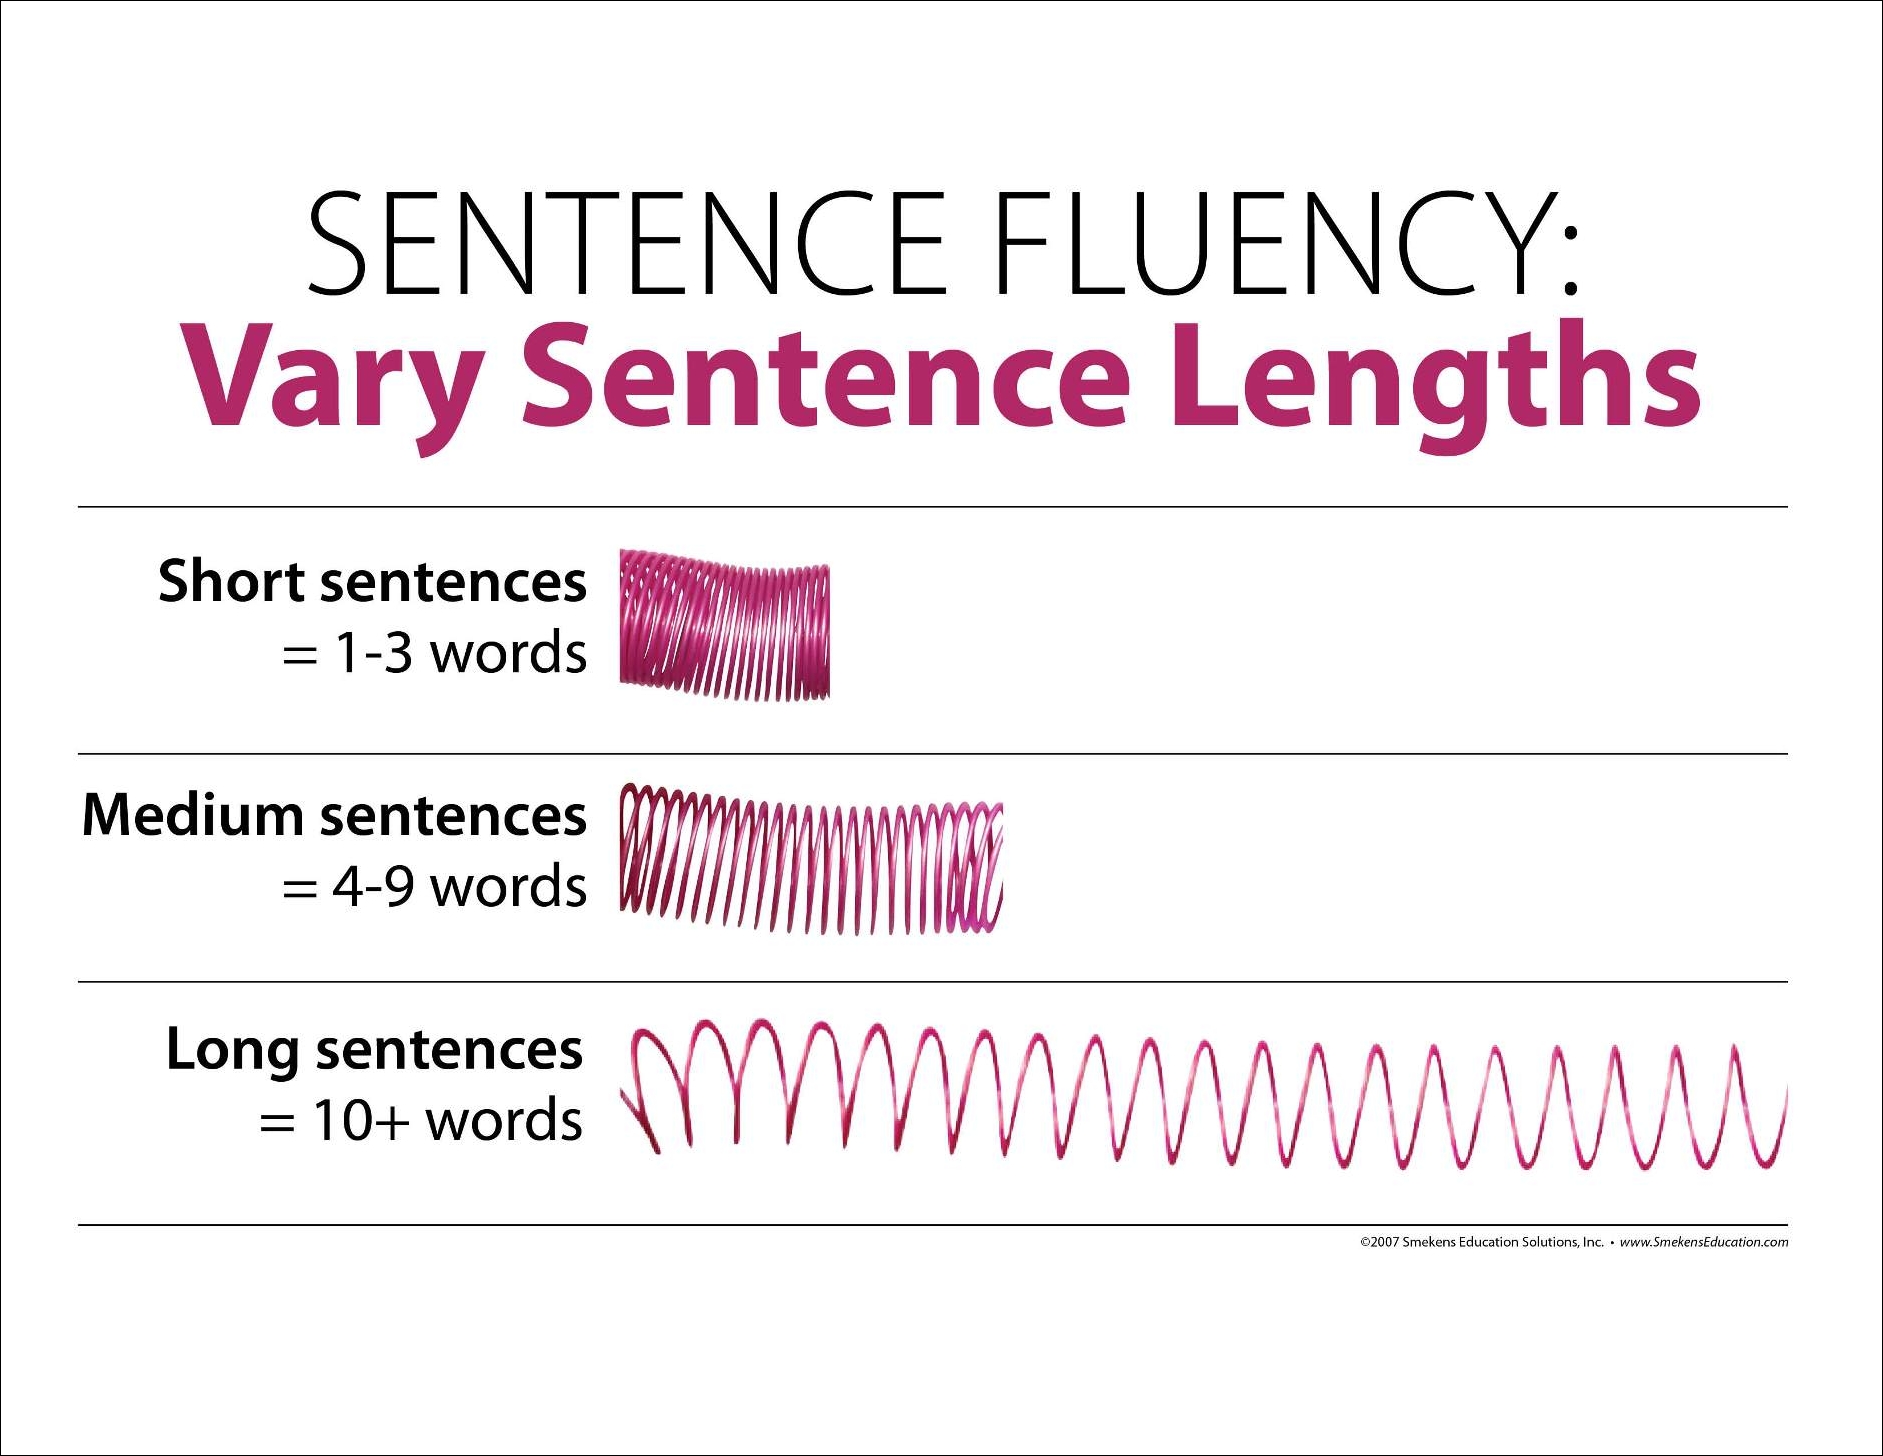 Sentence Fluency: Vary Sentence Lengths using a Slinky